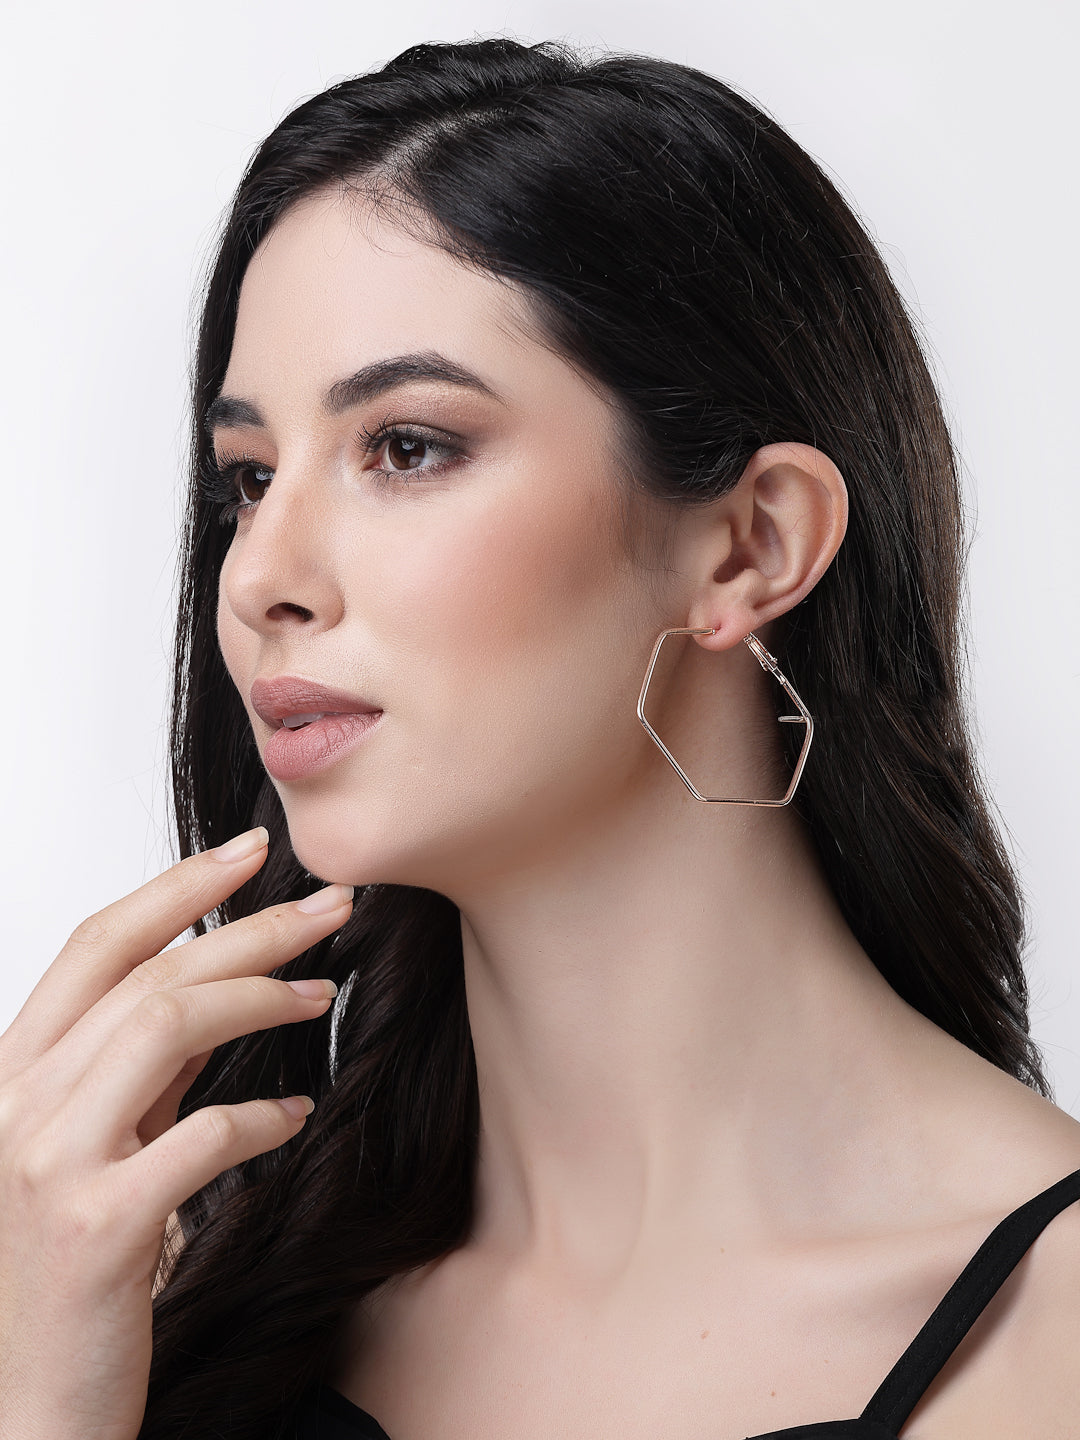 Women's Gold-Toned Geometric Hoop Earrings - NVR